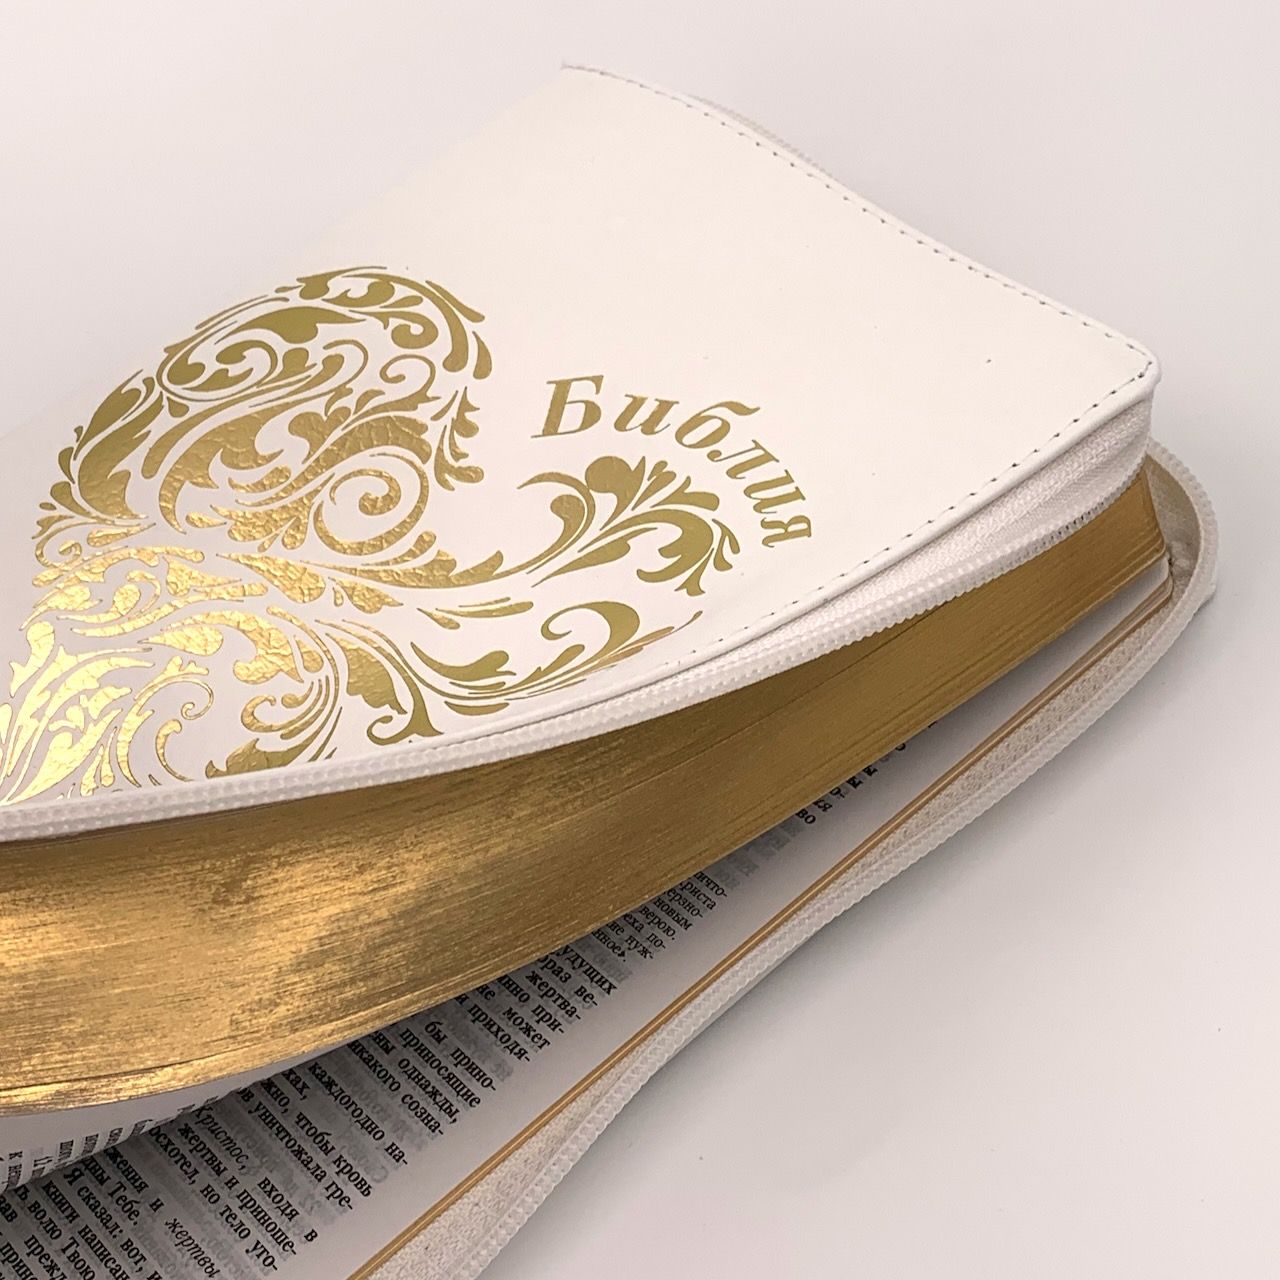 Библия 055z код B5 дизайн "золотое сердце" кожаный переплет на молнии, цвет белый, средний формат, 143*220 мм, параллельные места по центру страницы, белые страницы, золотой обрез, крупный шриф